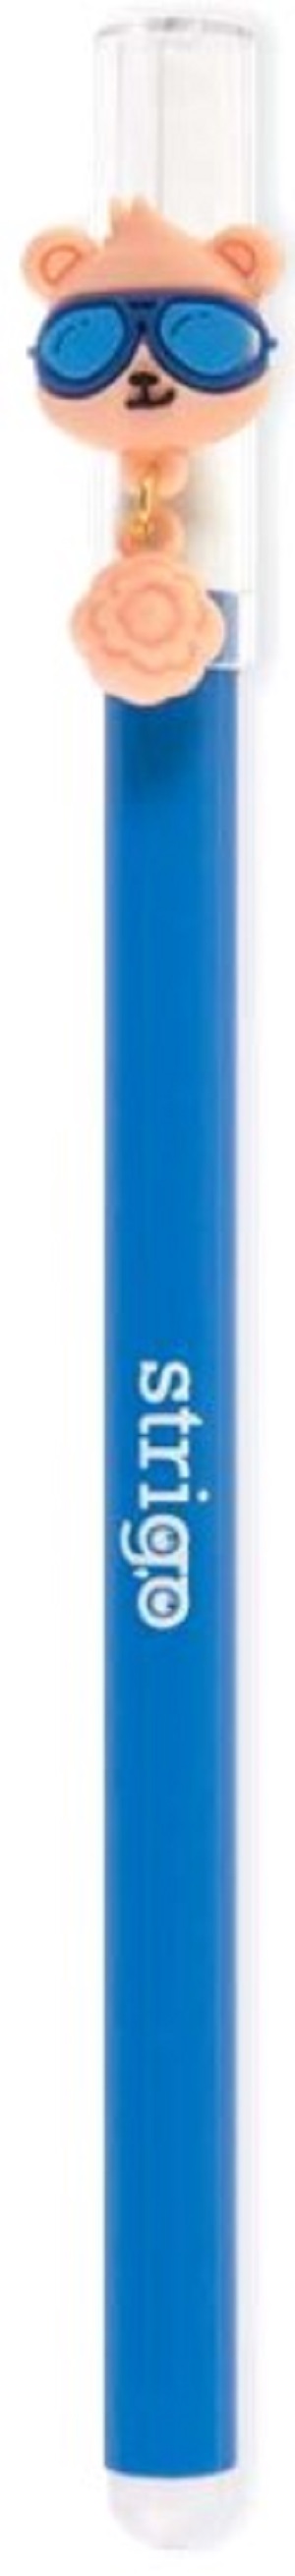 Pix cerneala termosensibila: Albastru. Ursulet